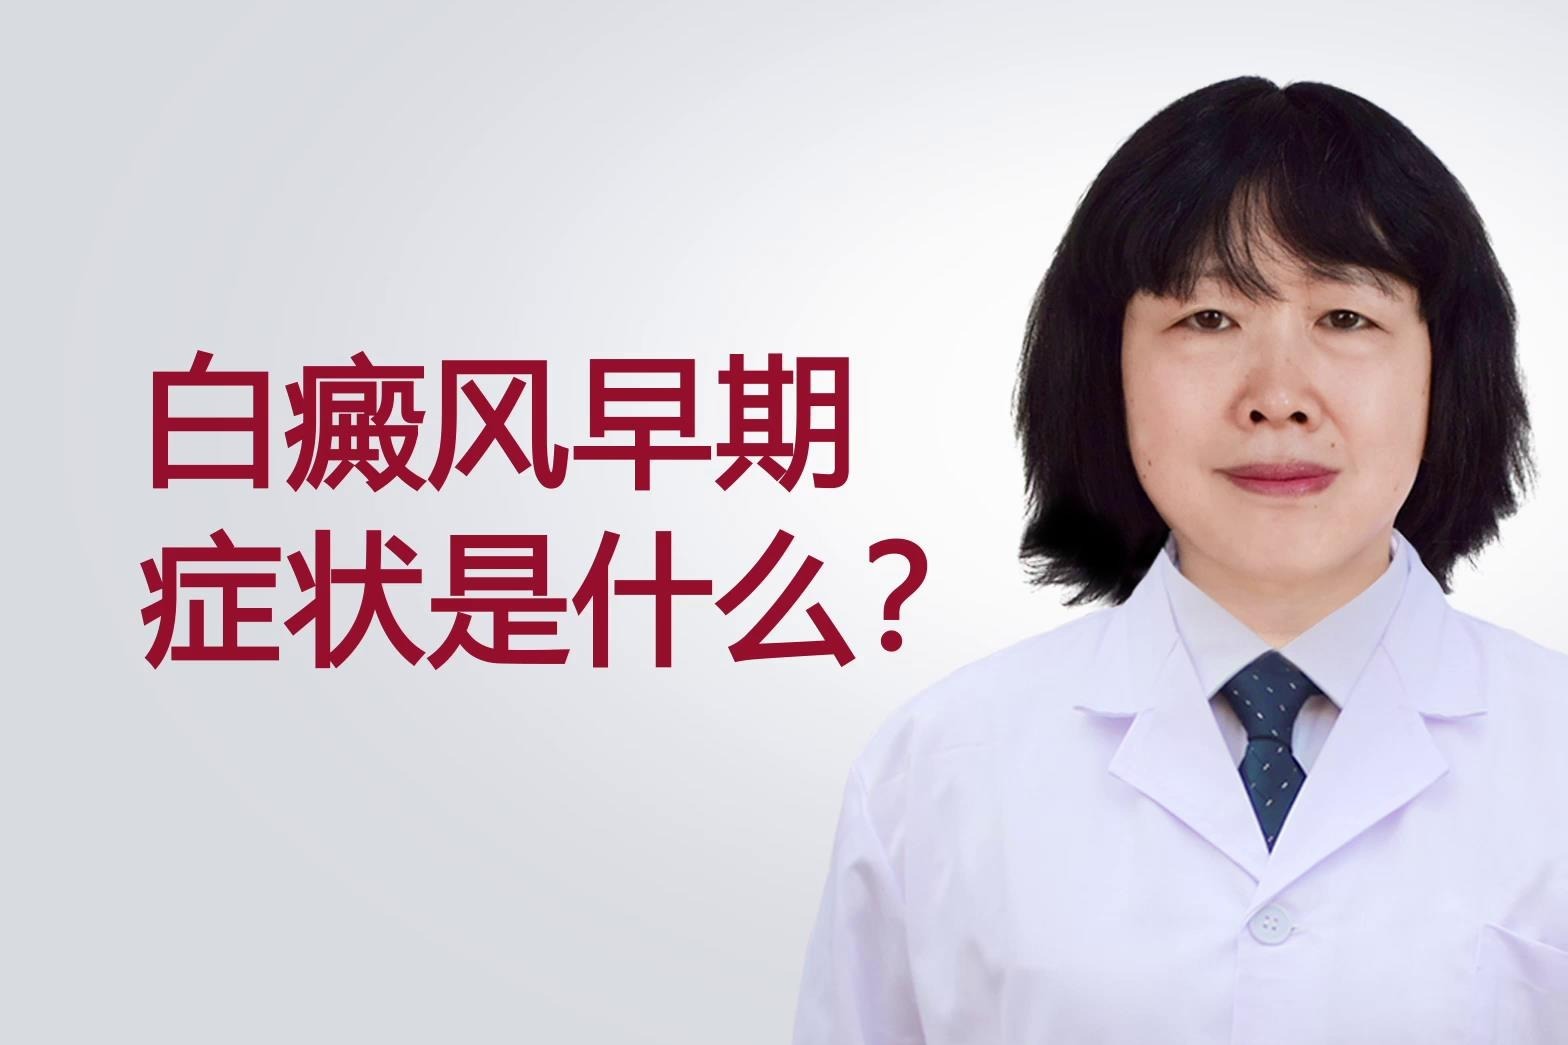 杭州丽都白癜风医院苏喜荣医生讲解：白癜风早期症状是什么？